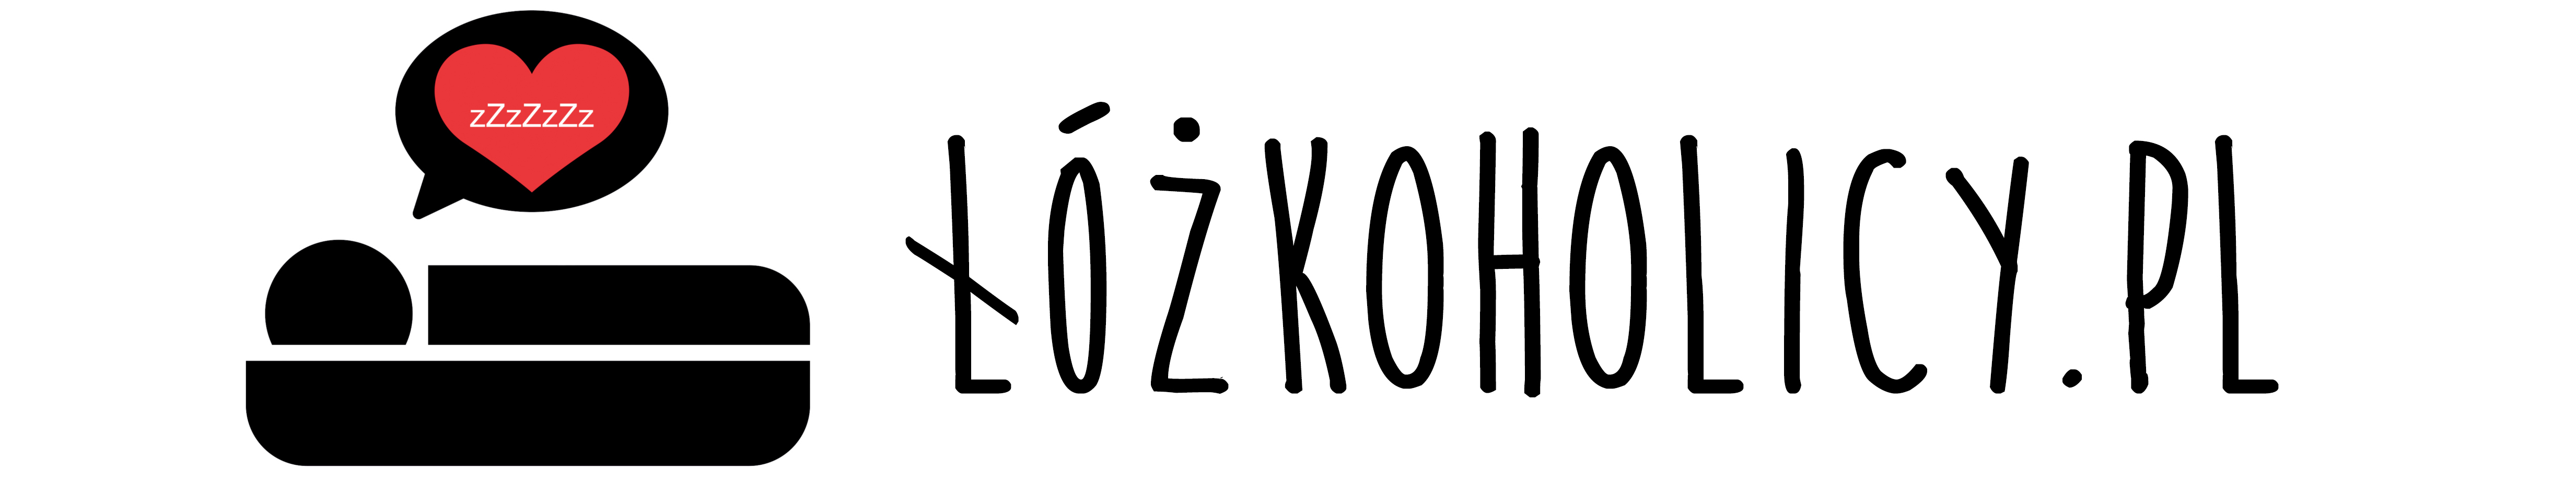 Lozkoholicy_logo